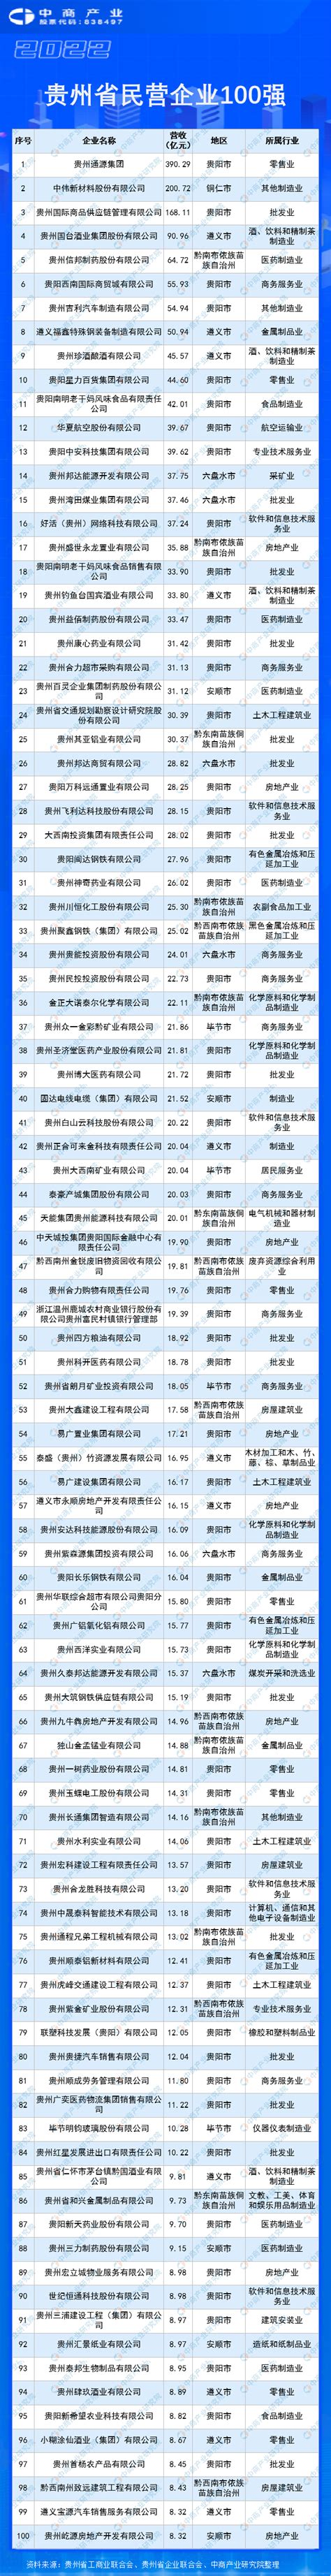 2021贵州100强企业榜单发布 茅台建工电网居前三 - 当代先锋网 - 要闻